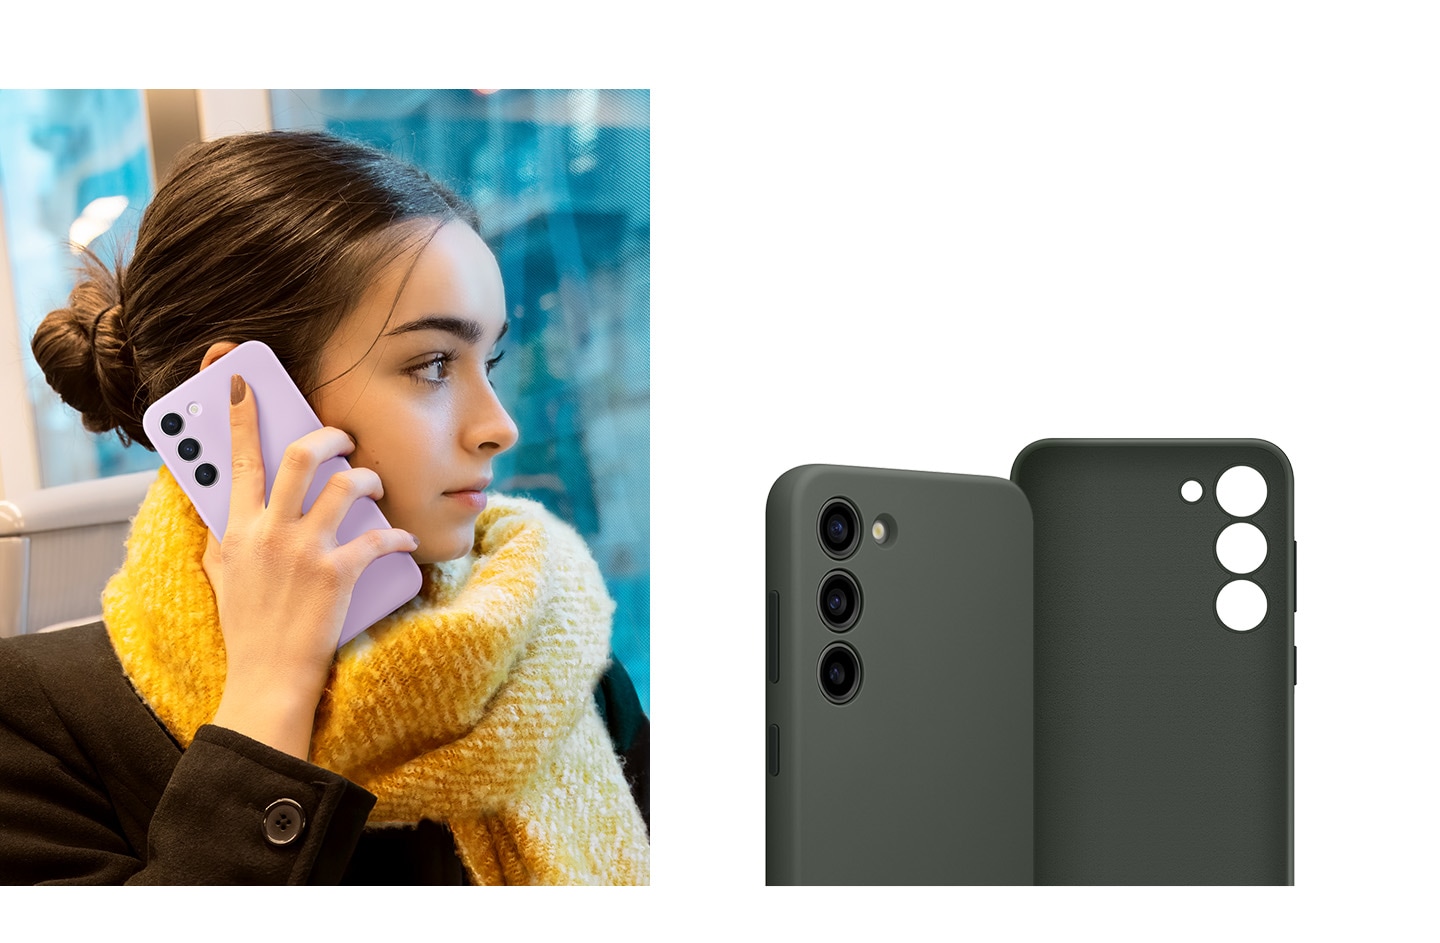 Rückansicht des Silicone Grip Cases. Ein Mann hält das Galaxy S23 Smartphone in der Hand, wobei er seine Finger unter das Band legt. Man sieht eine Nahaufnahme der Innen- und Außenseite des Cases.